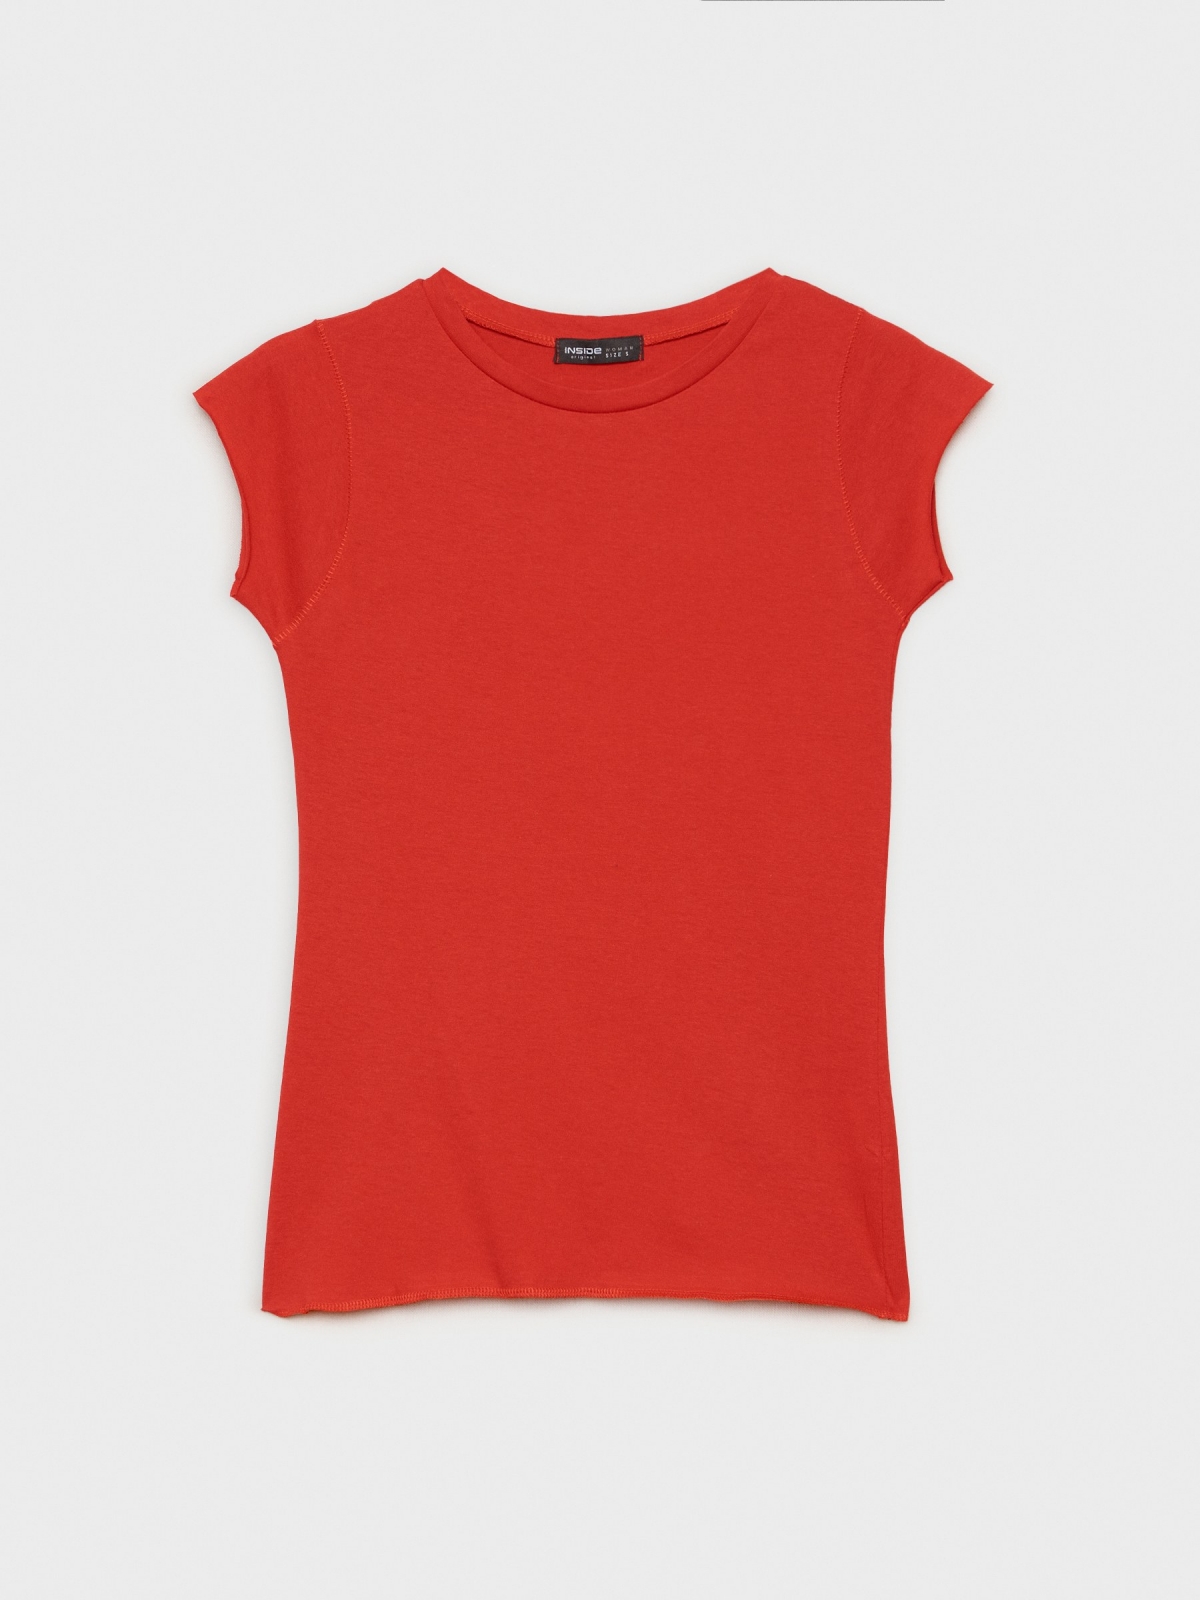  T-shirt básica de gola redonda vermelho